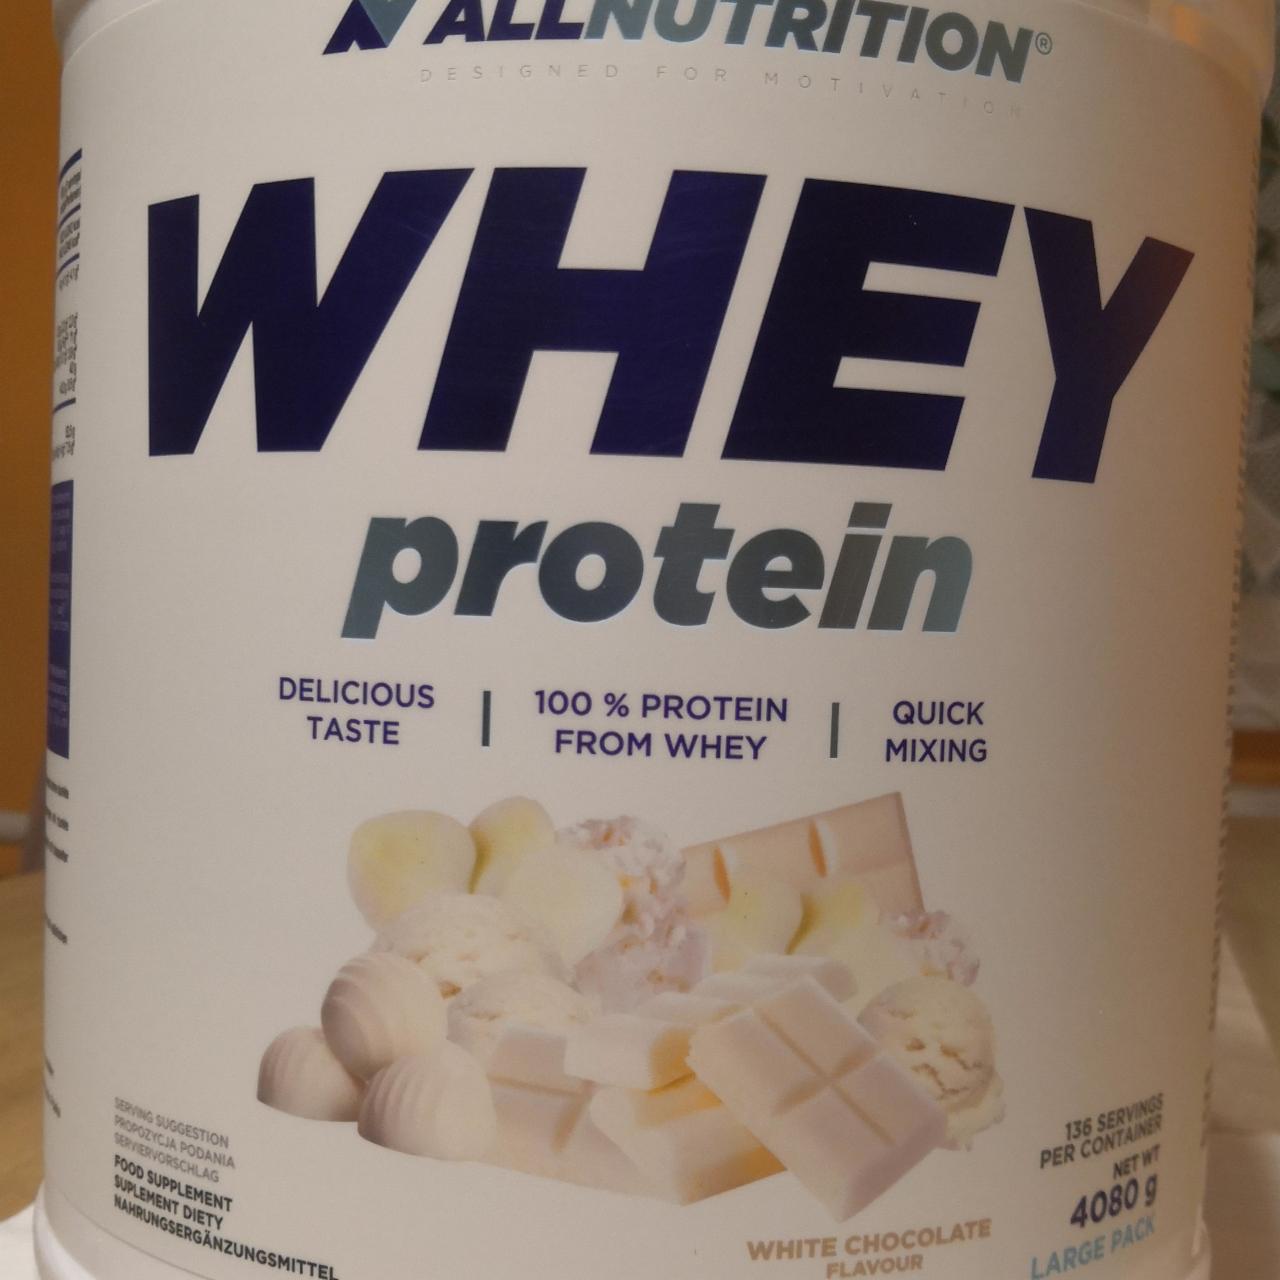 Képek - proteín AllNutrition whey protein csoki